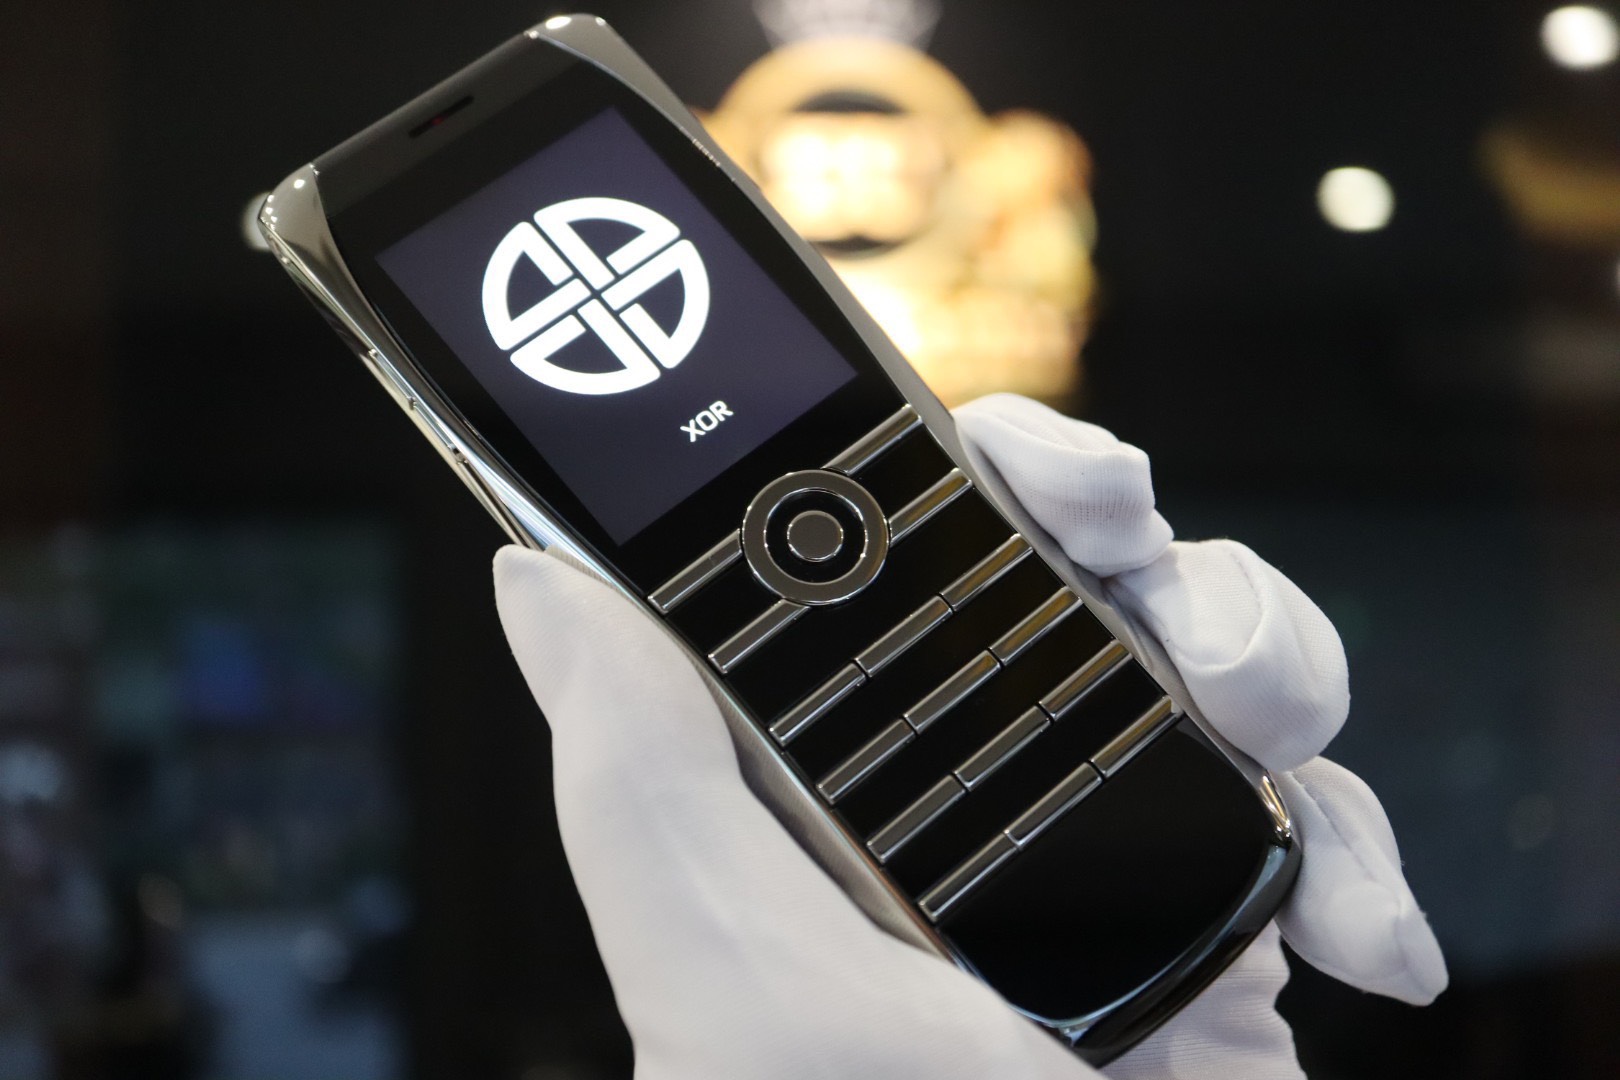  Điện thoại xa xỉ đến từ nước Anh XOR - Siêu phẩm dành riêng cho những người yêu công nghệ và đam mê cái đẹp